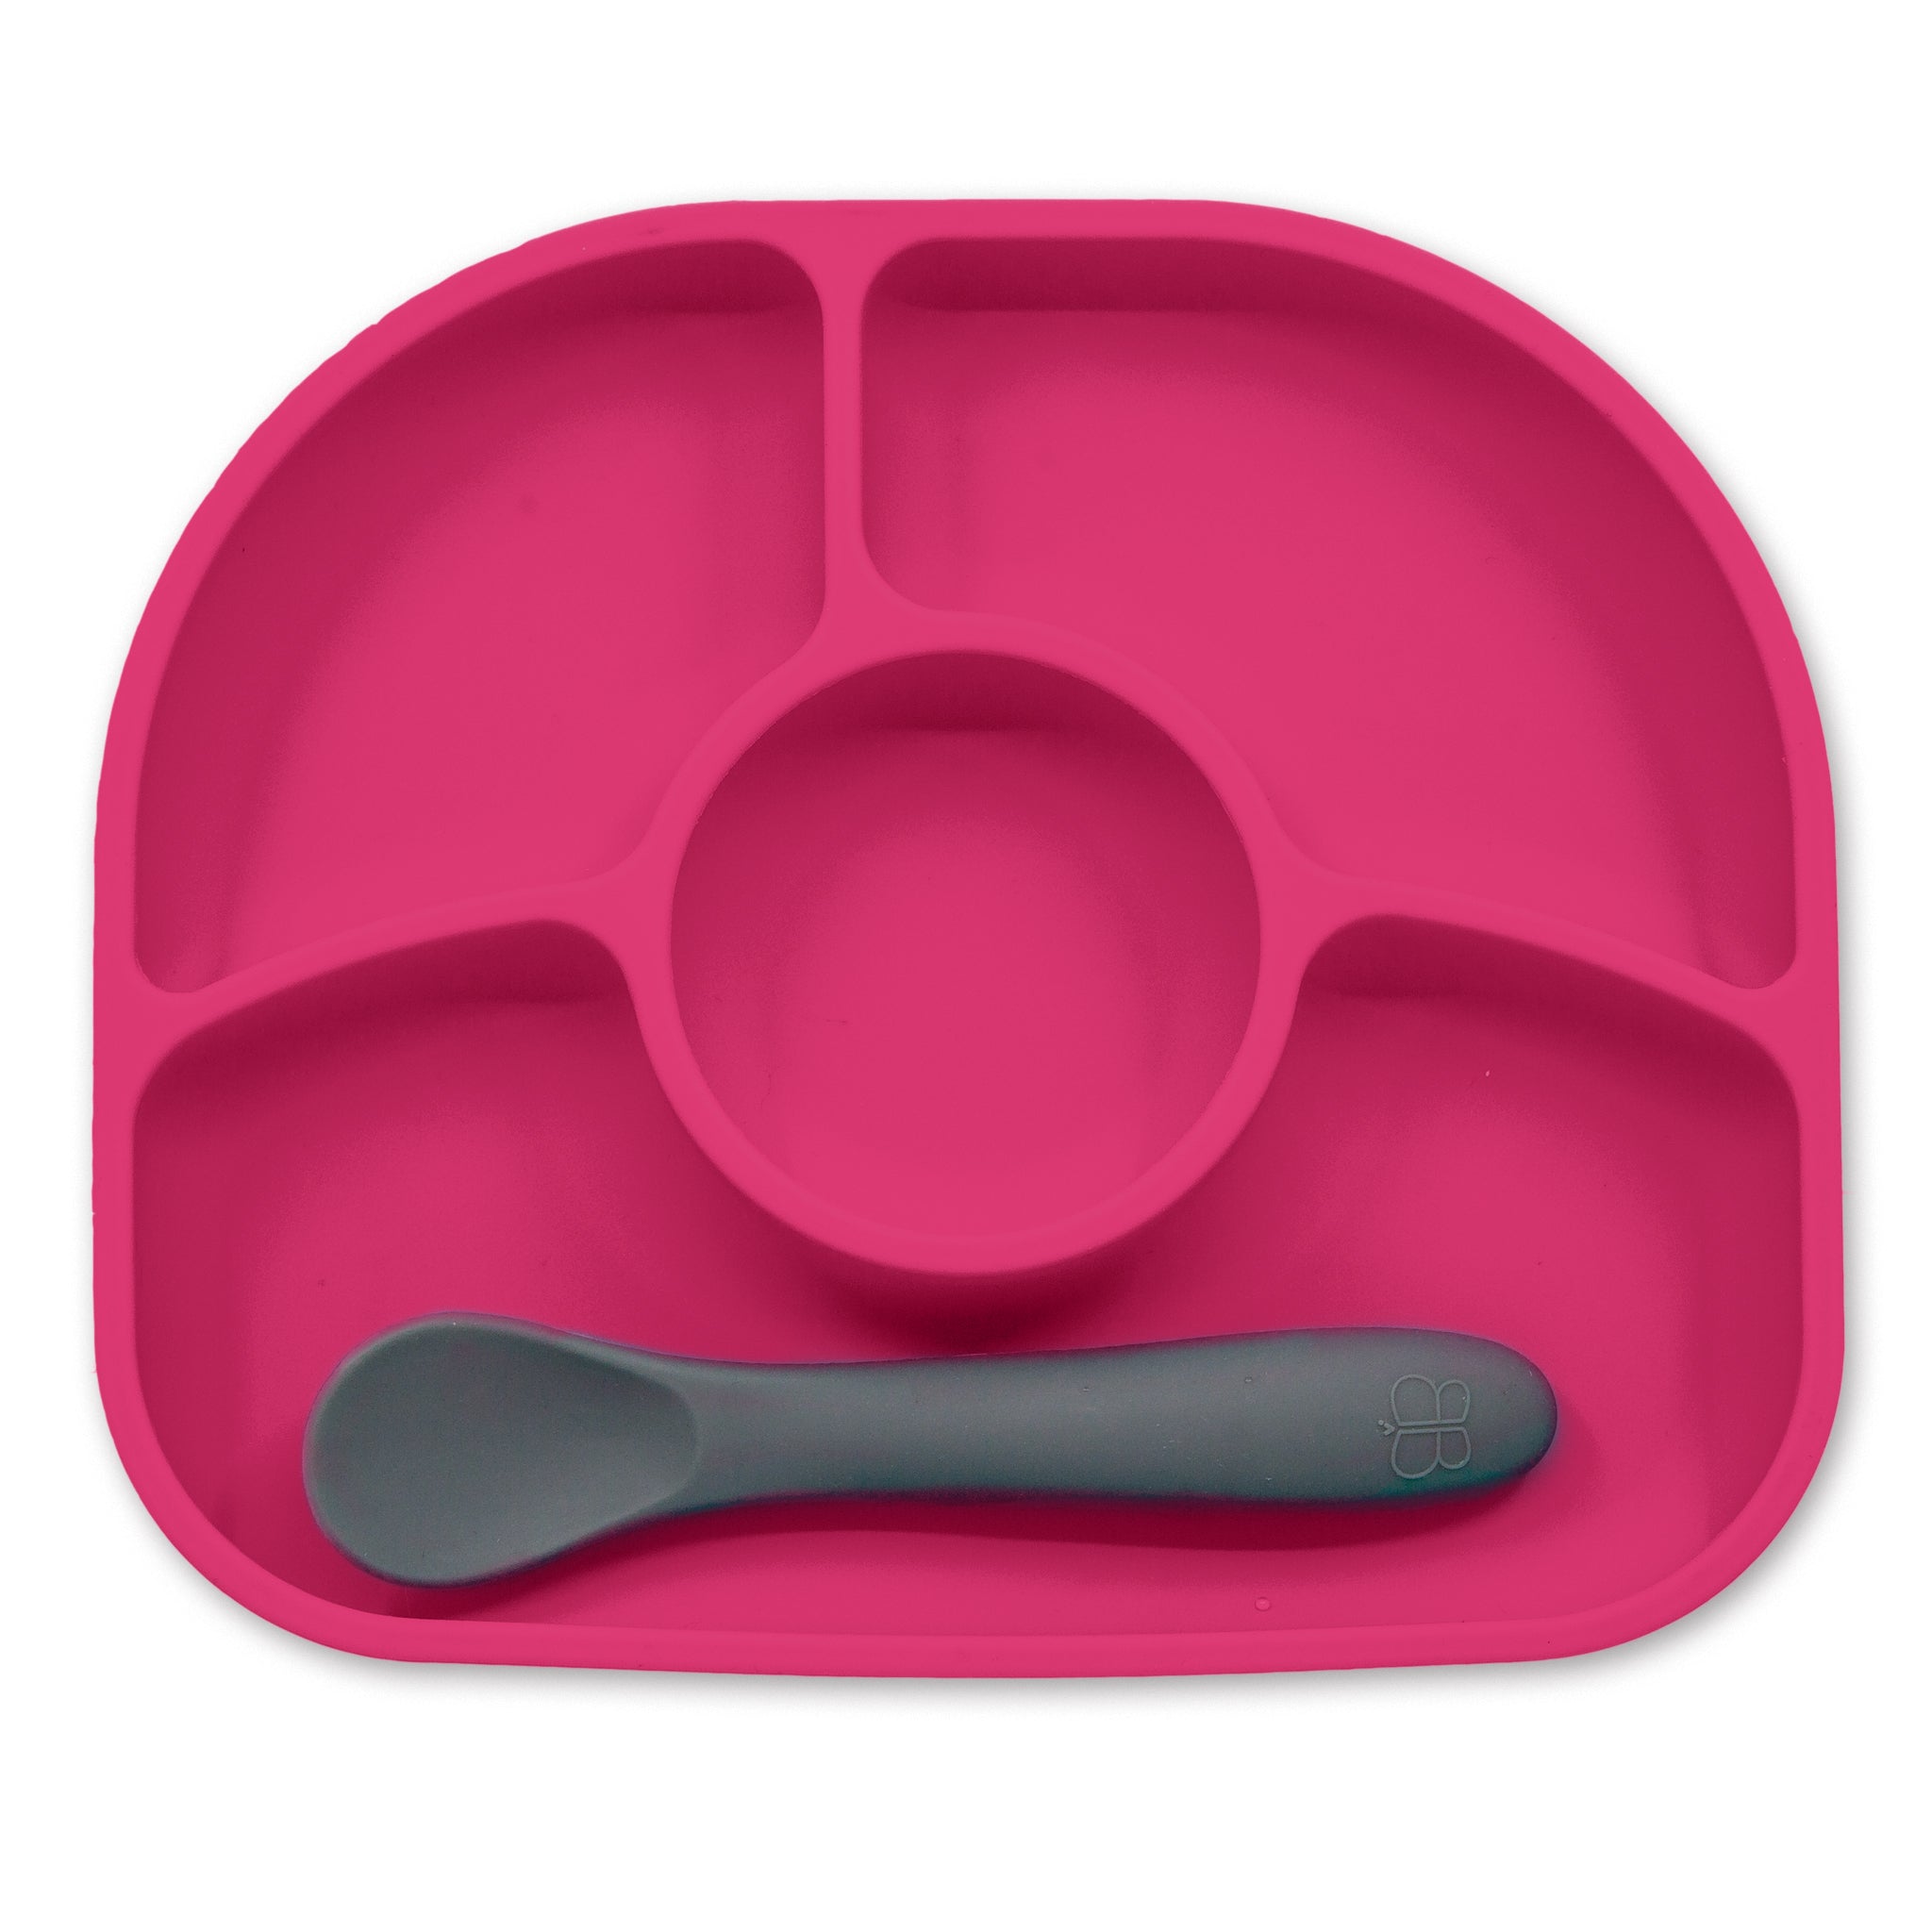 Petite cuillère rose - Cuillère à glace rose, Fabricant de fourchettes et  cuillères compostables fabriquées à Taiwan